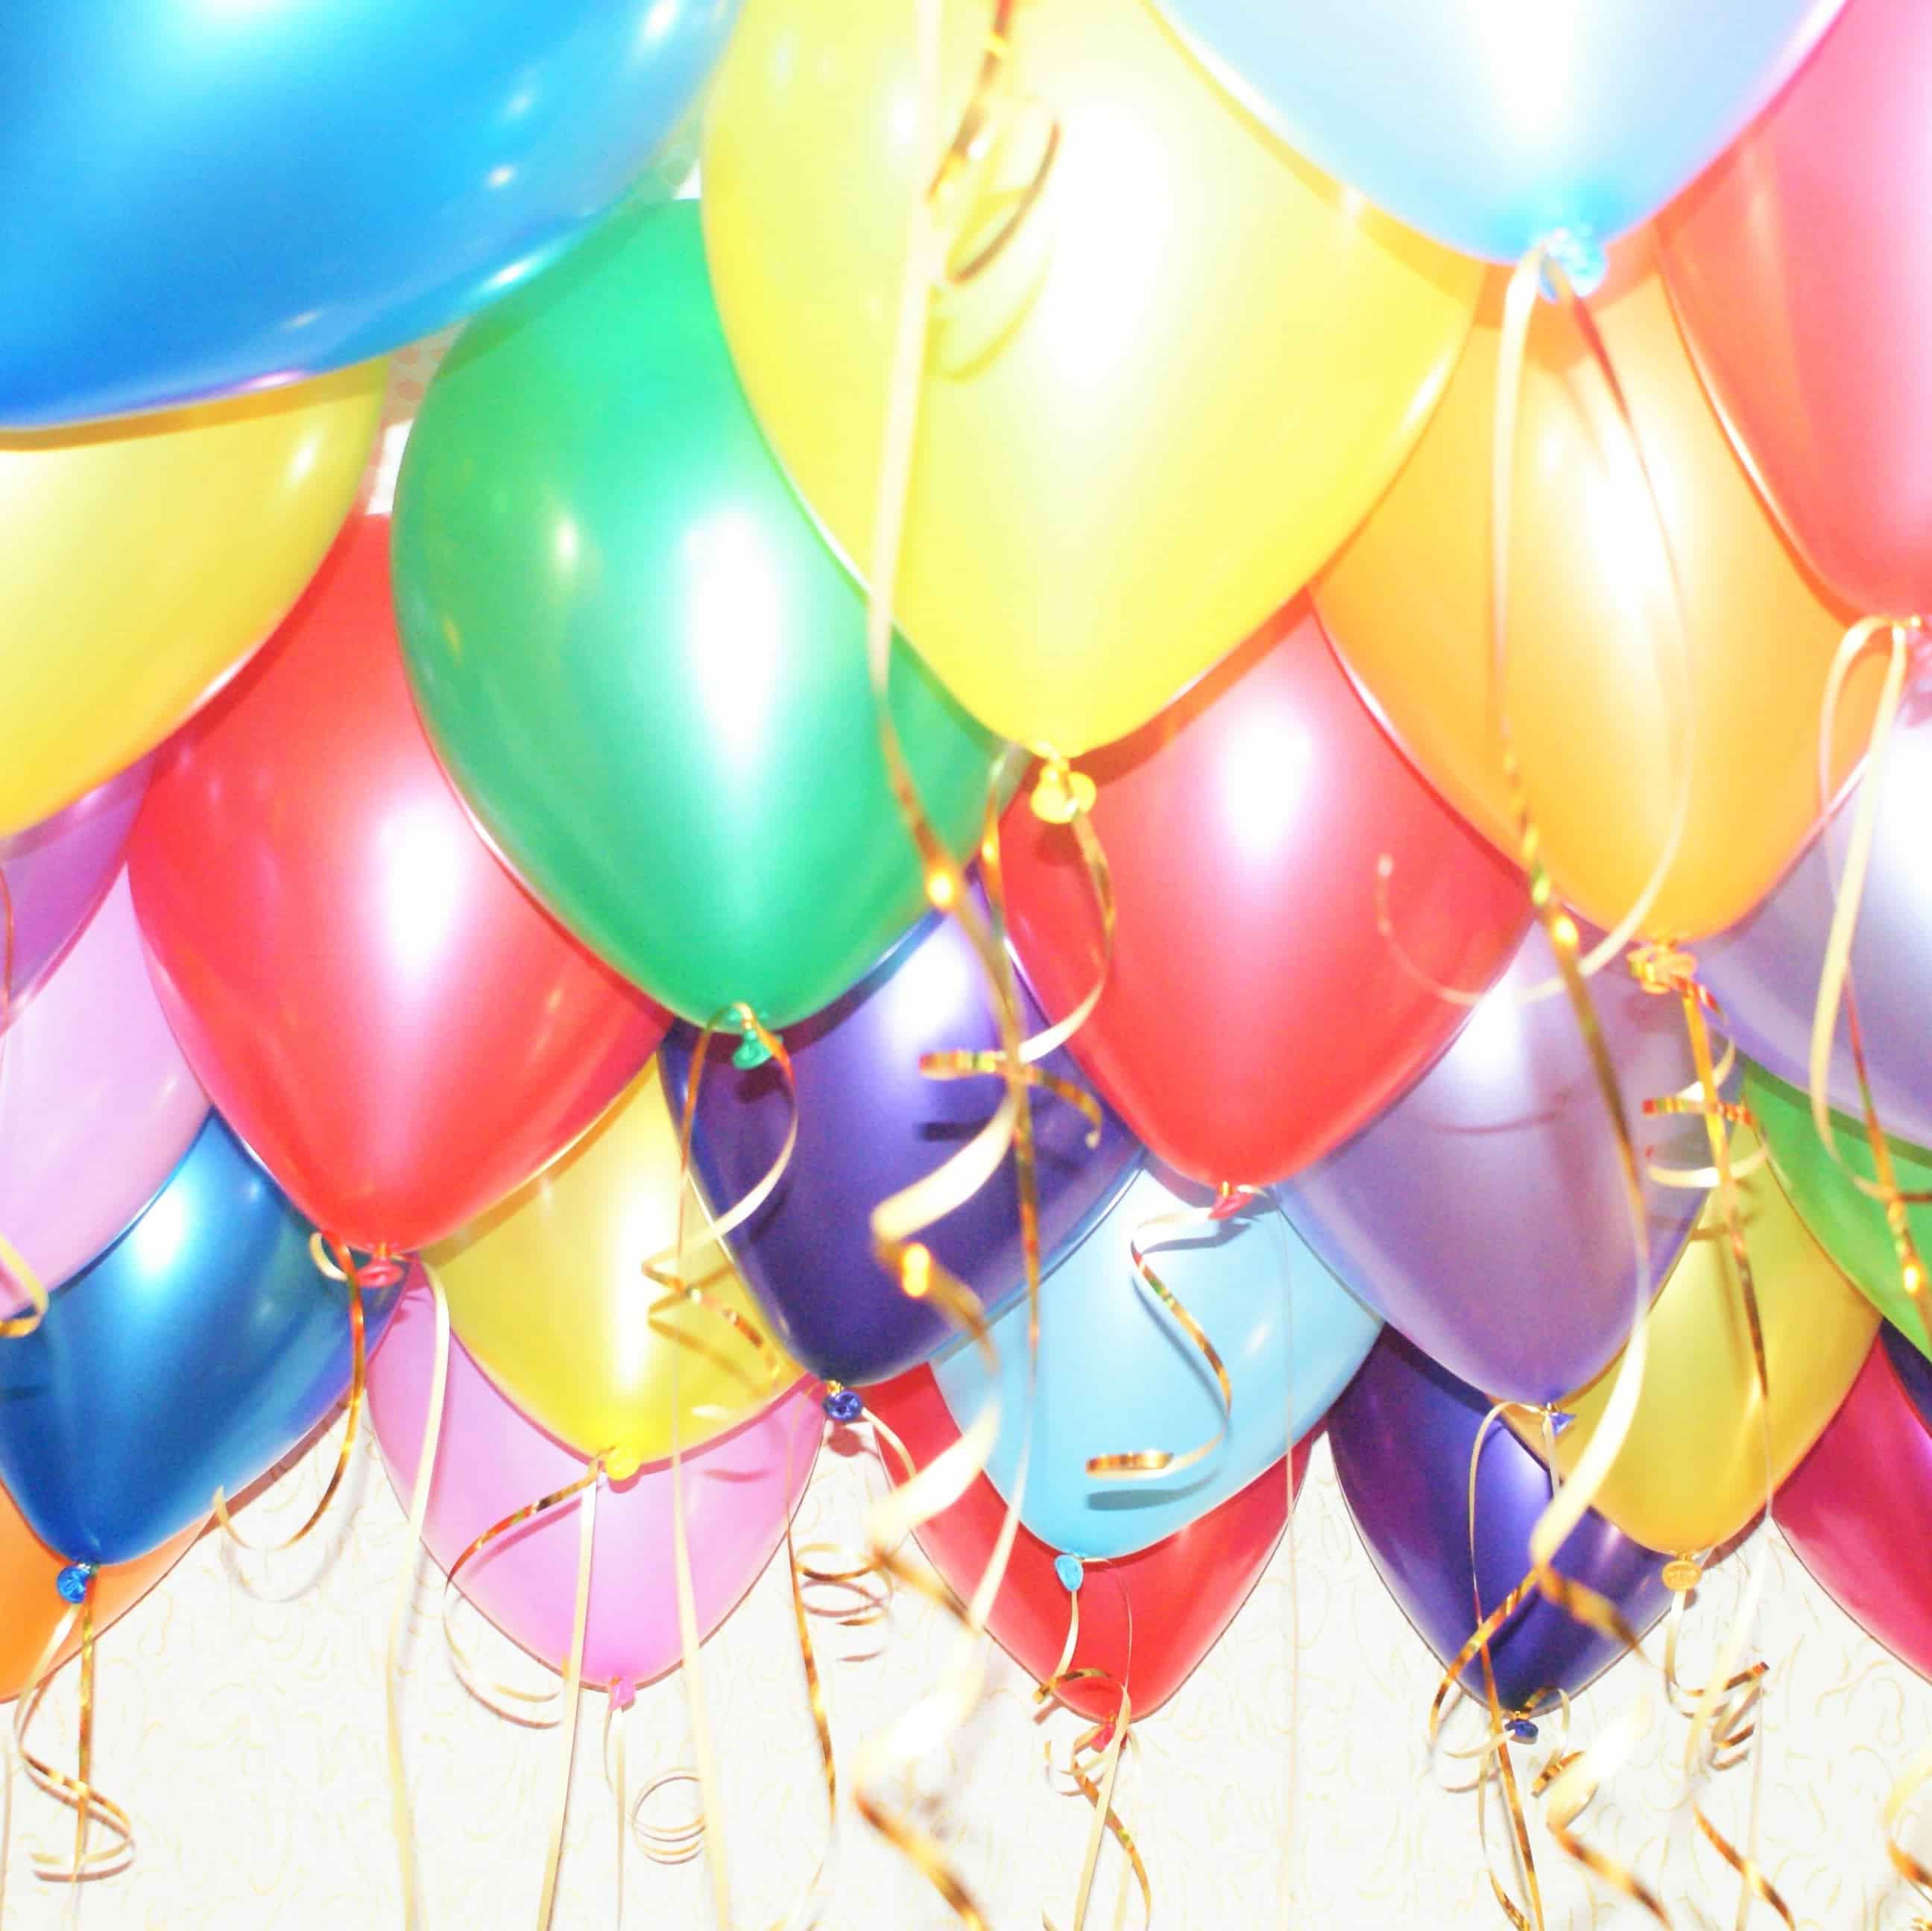 Облако из 15 латексных воздушных шаров купить в магазине товаров для праздника Fiesta с быстрой доставкой по Нижнему Новгороду и области. Гарантия долгого полета! Более 2000 наименований гелиевых шаров!